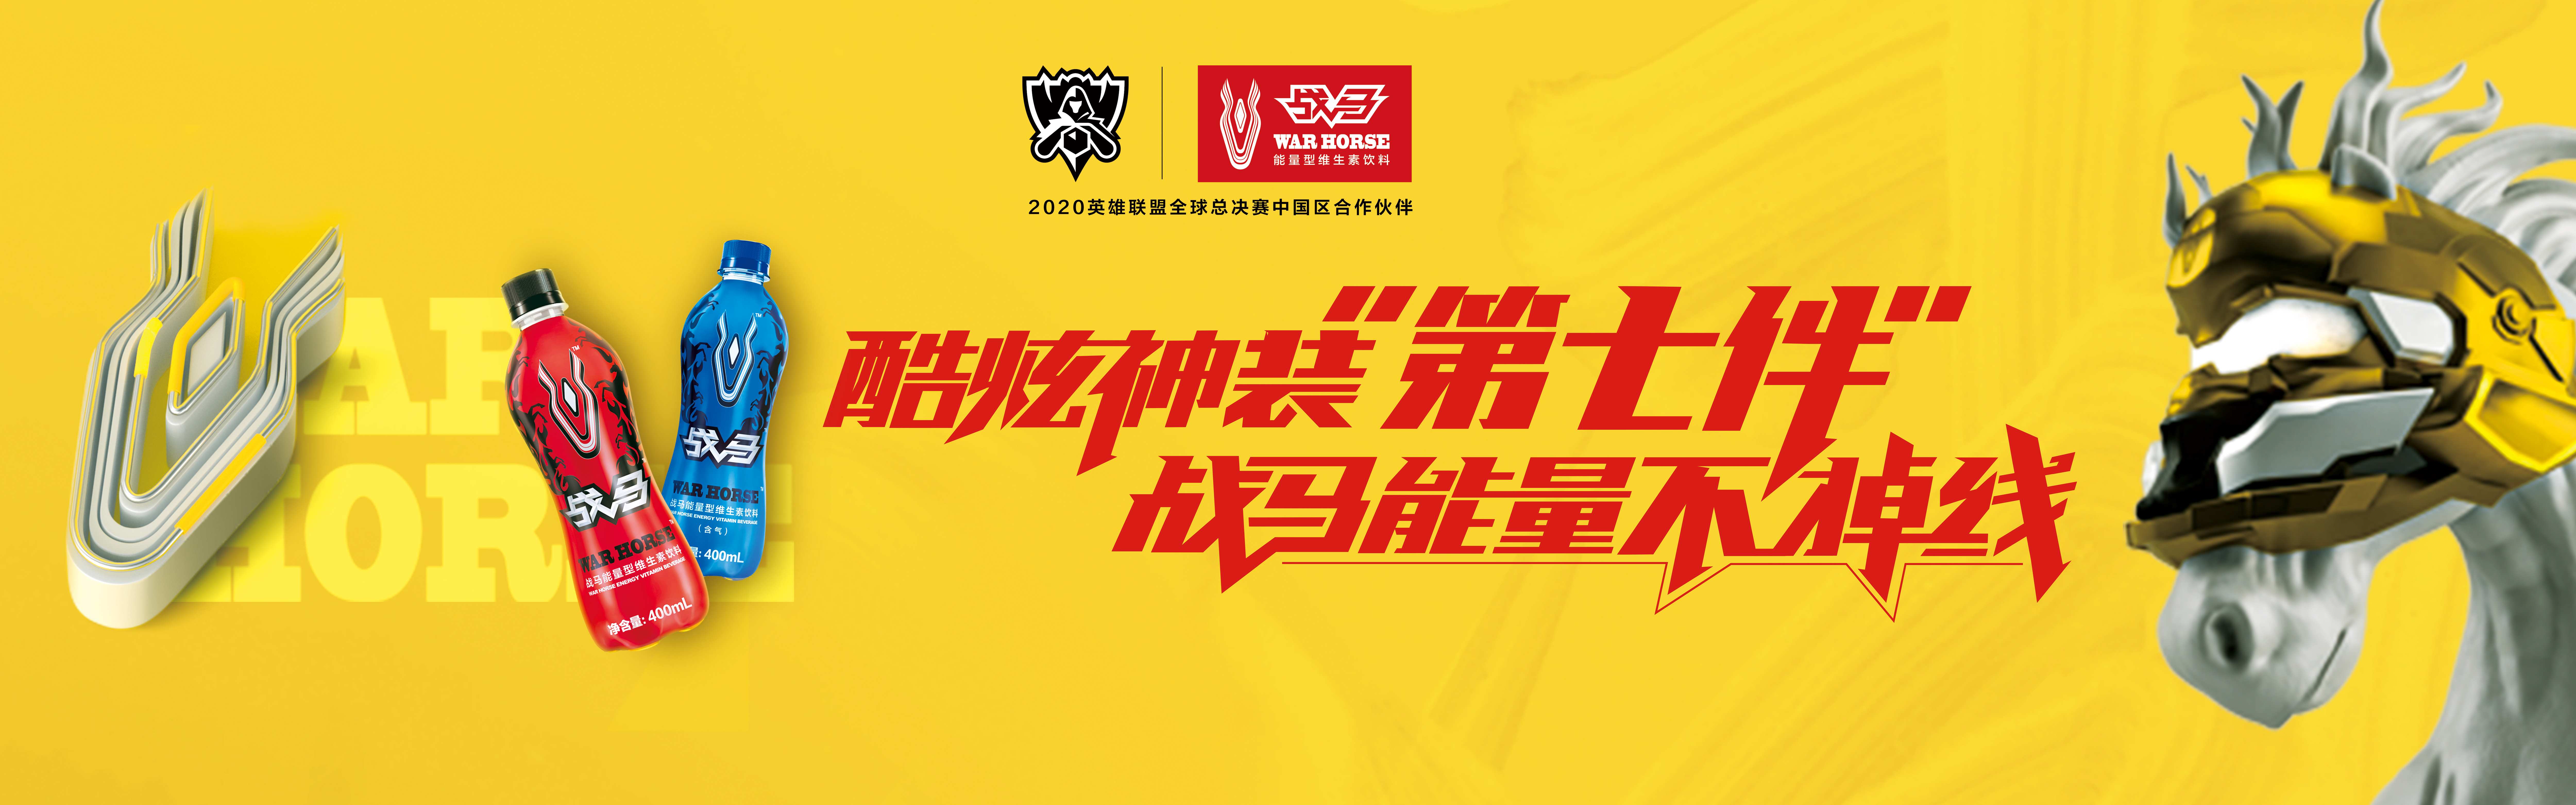 2020全球总决赛开战在即，战马饮料助力中国战队卫冕冠军